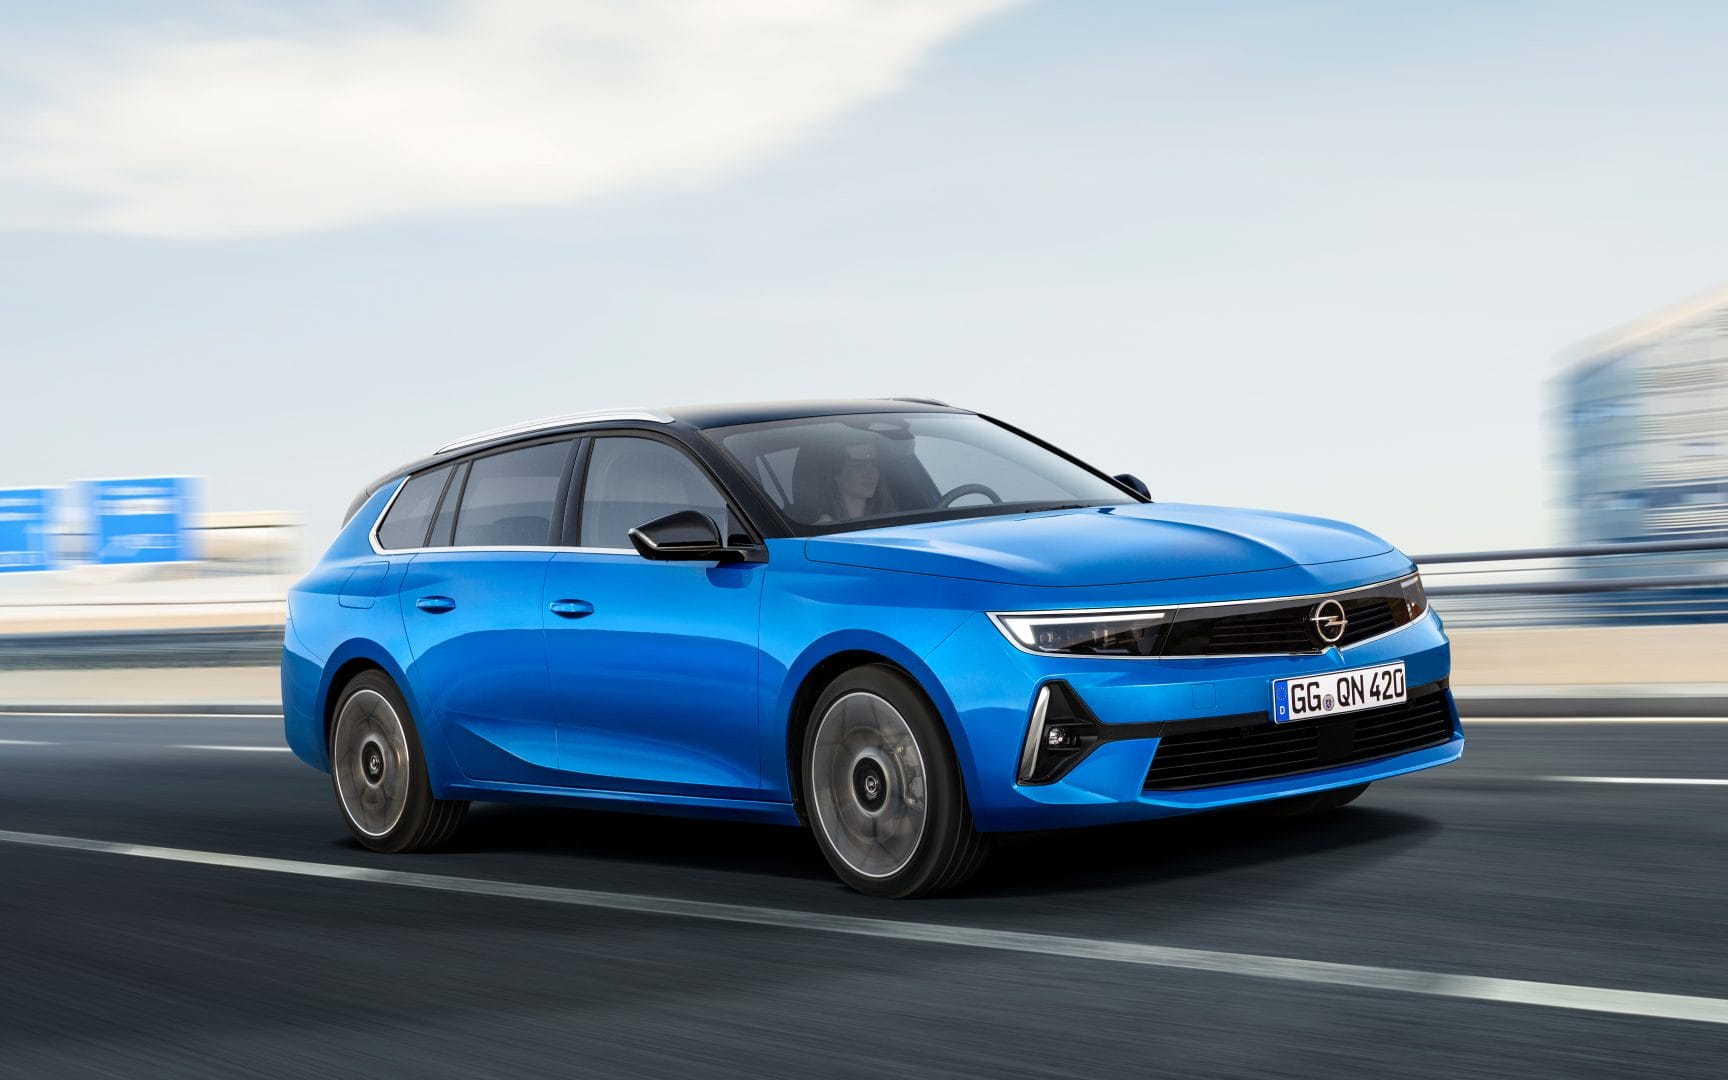 Opel Astra Sports Tourer - nowy obiekt zainteresowania flot i rodzin